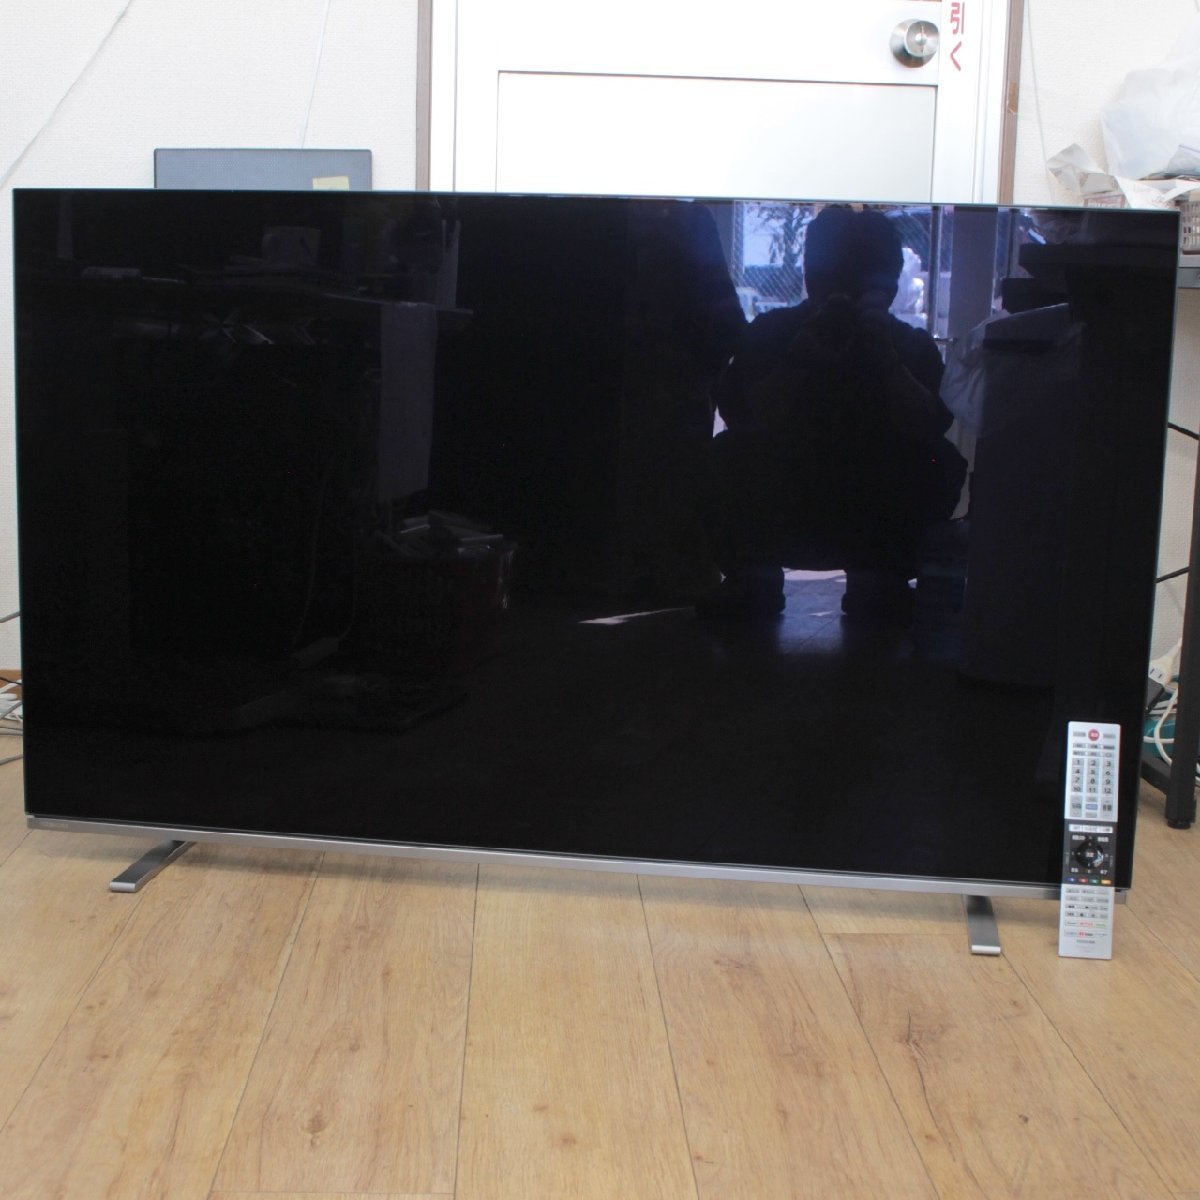 横浜市保土ヶ谷区にて 東芝 4K有機ELテレビ 55X8400 2020年製 を出張買取させて頂きました。